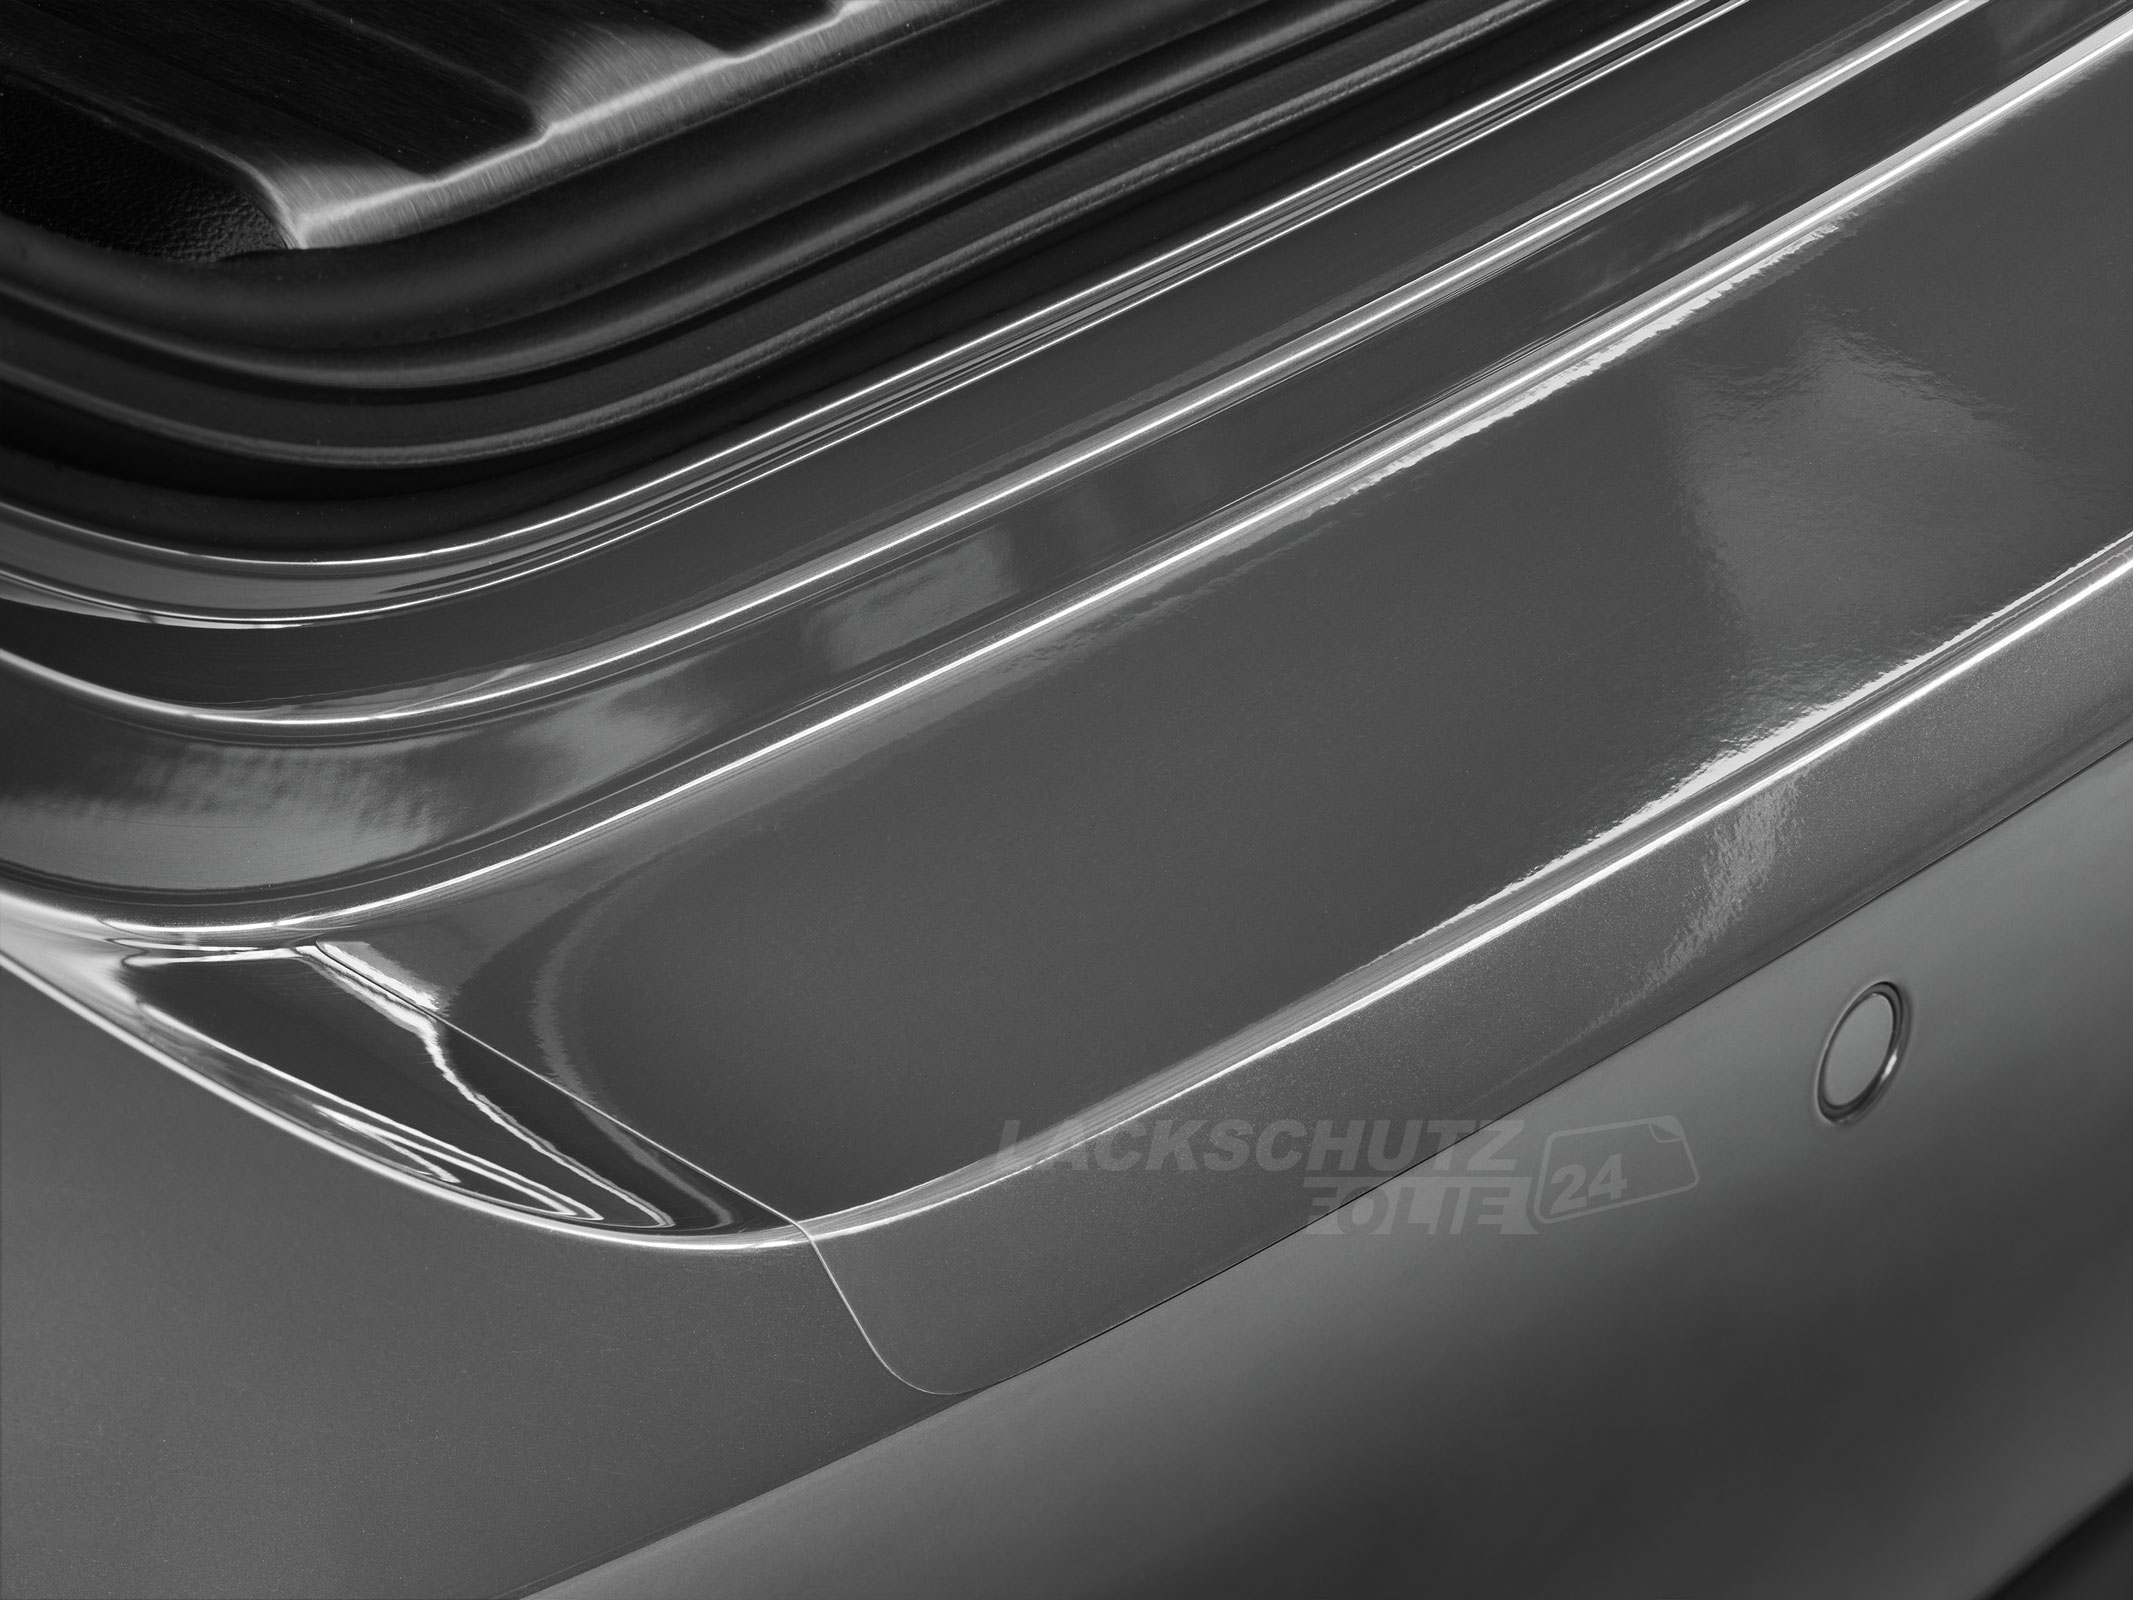 Ladekantenschutzfolie - Transparent Glatt Hochglänzend 150 µm stark für Peugeot 508 SW (Kombi) (I) Facelift, BJ 09/2014 - 06/2019